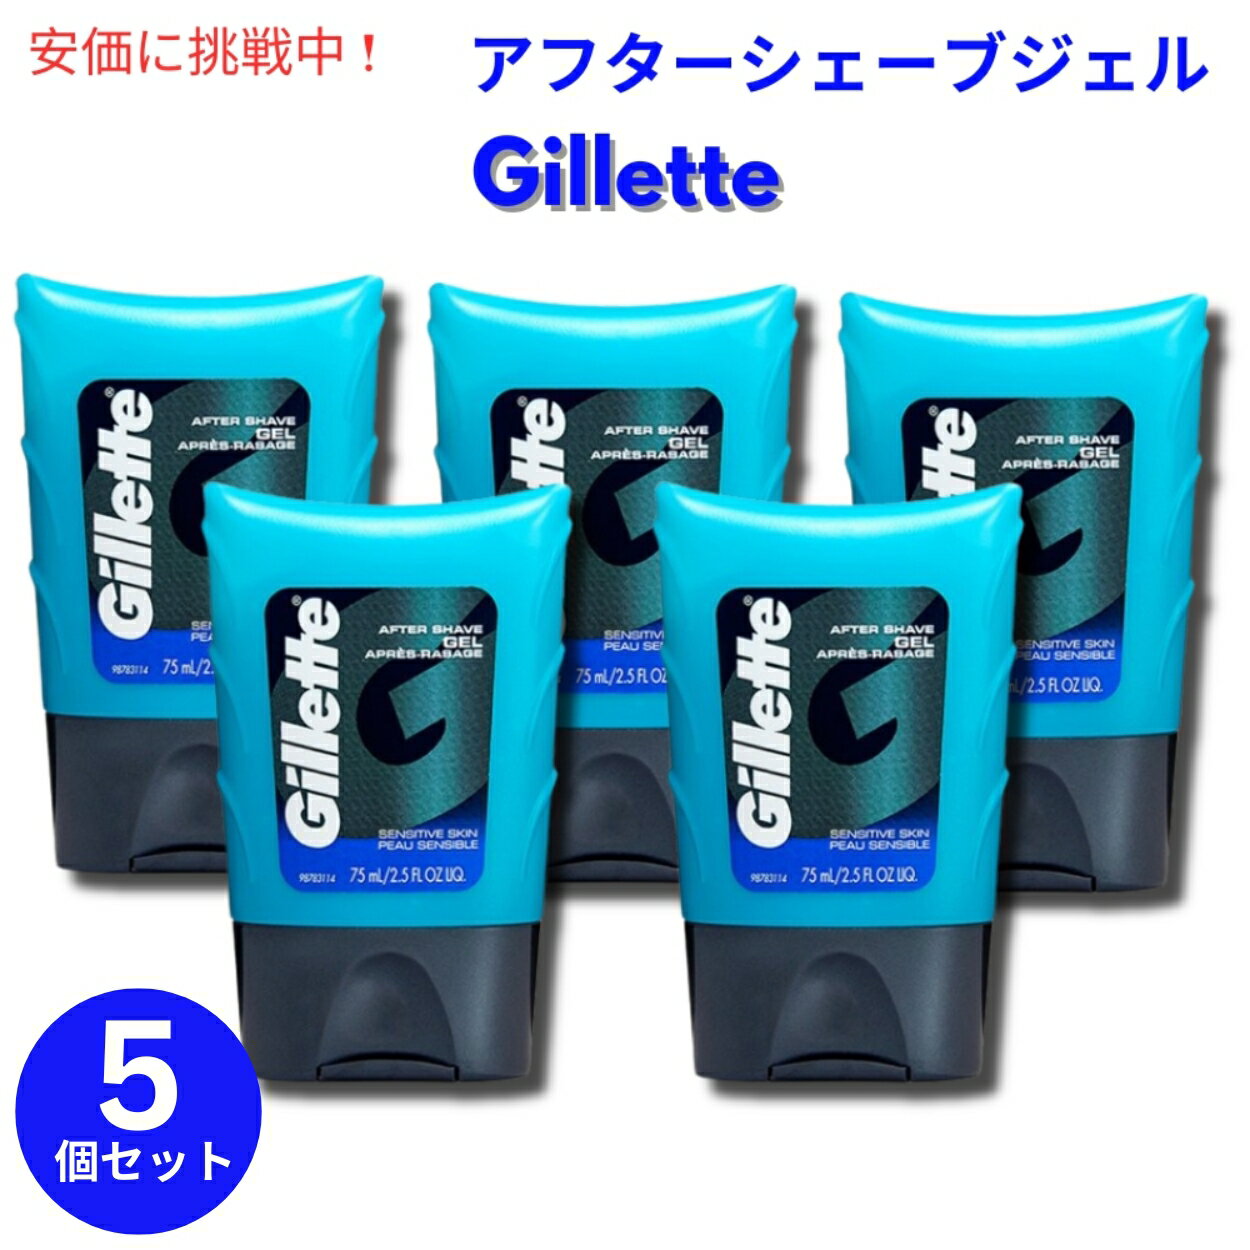 【5個セット】Gillette Aftershave Gel for Men Light Fragrance 2.5 oz 敏感肌用 ライトフレグランス ジレット アフターシェーブジェル